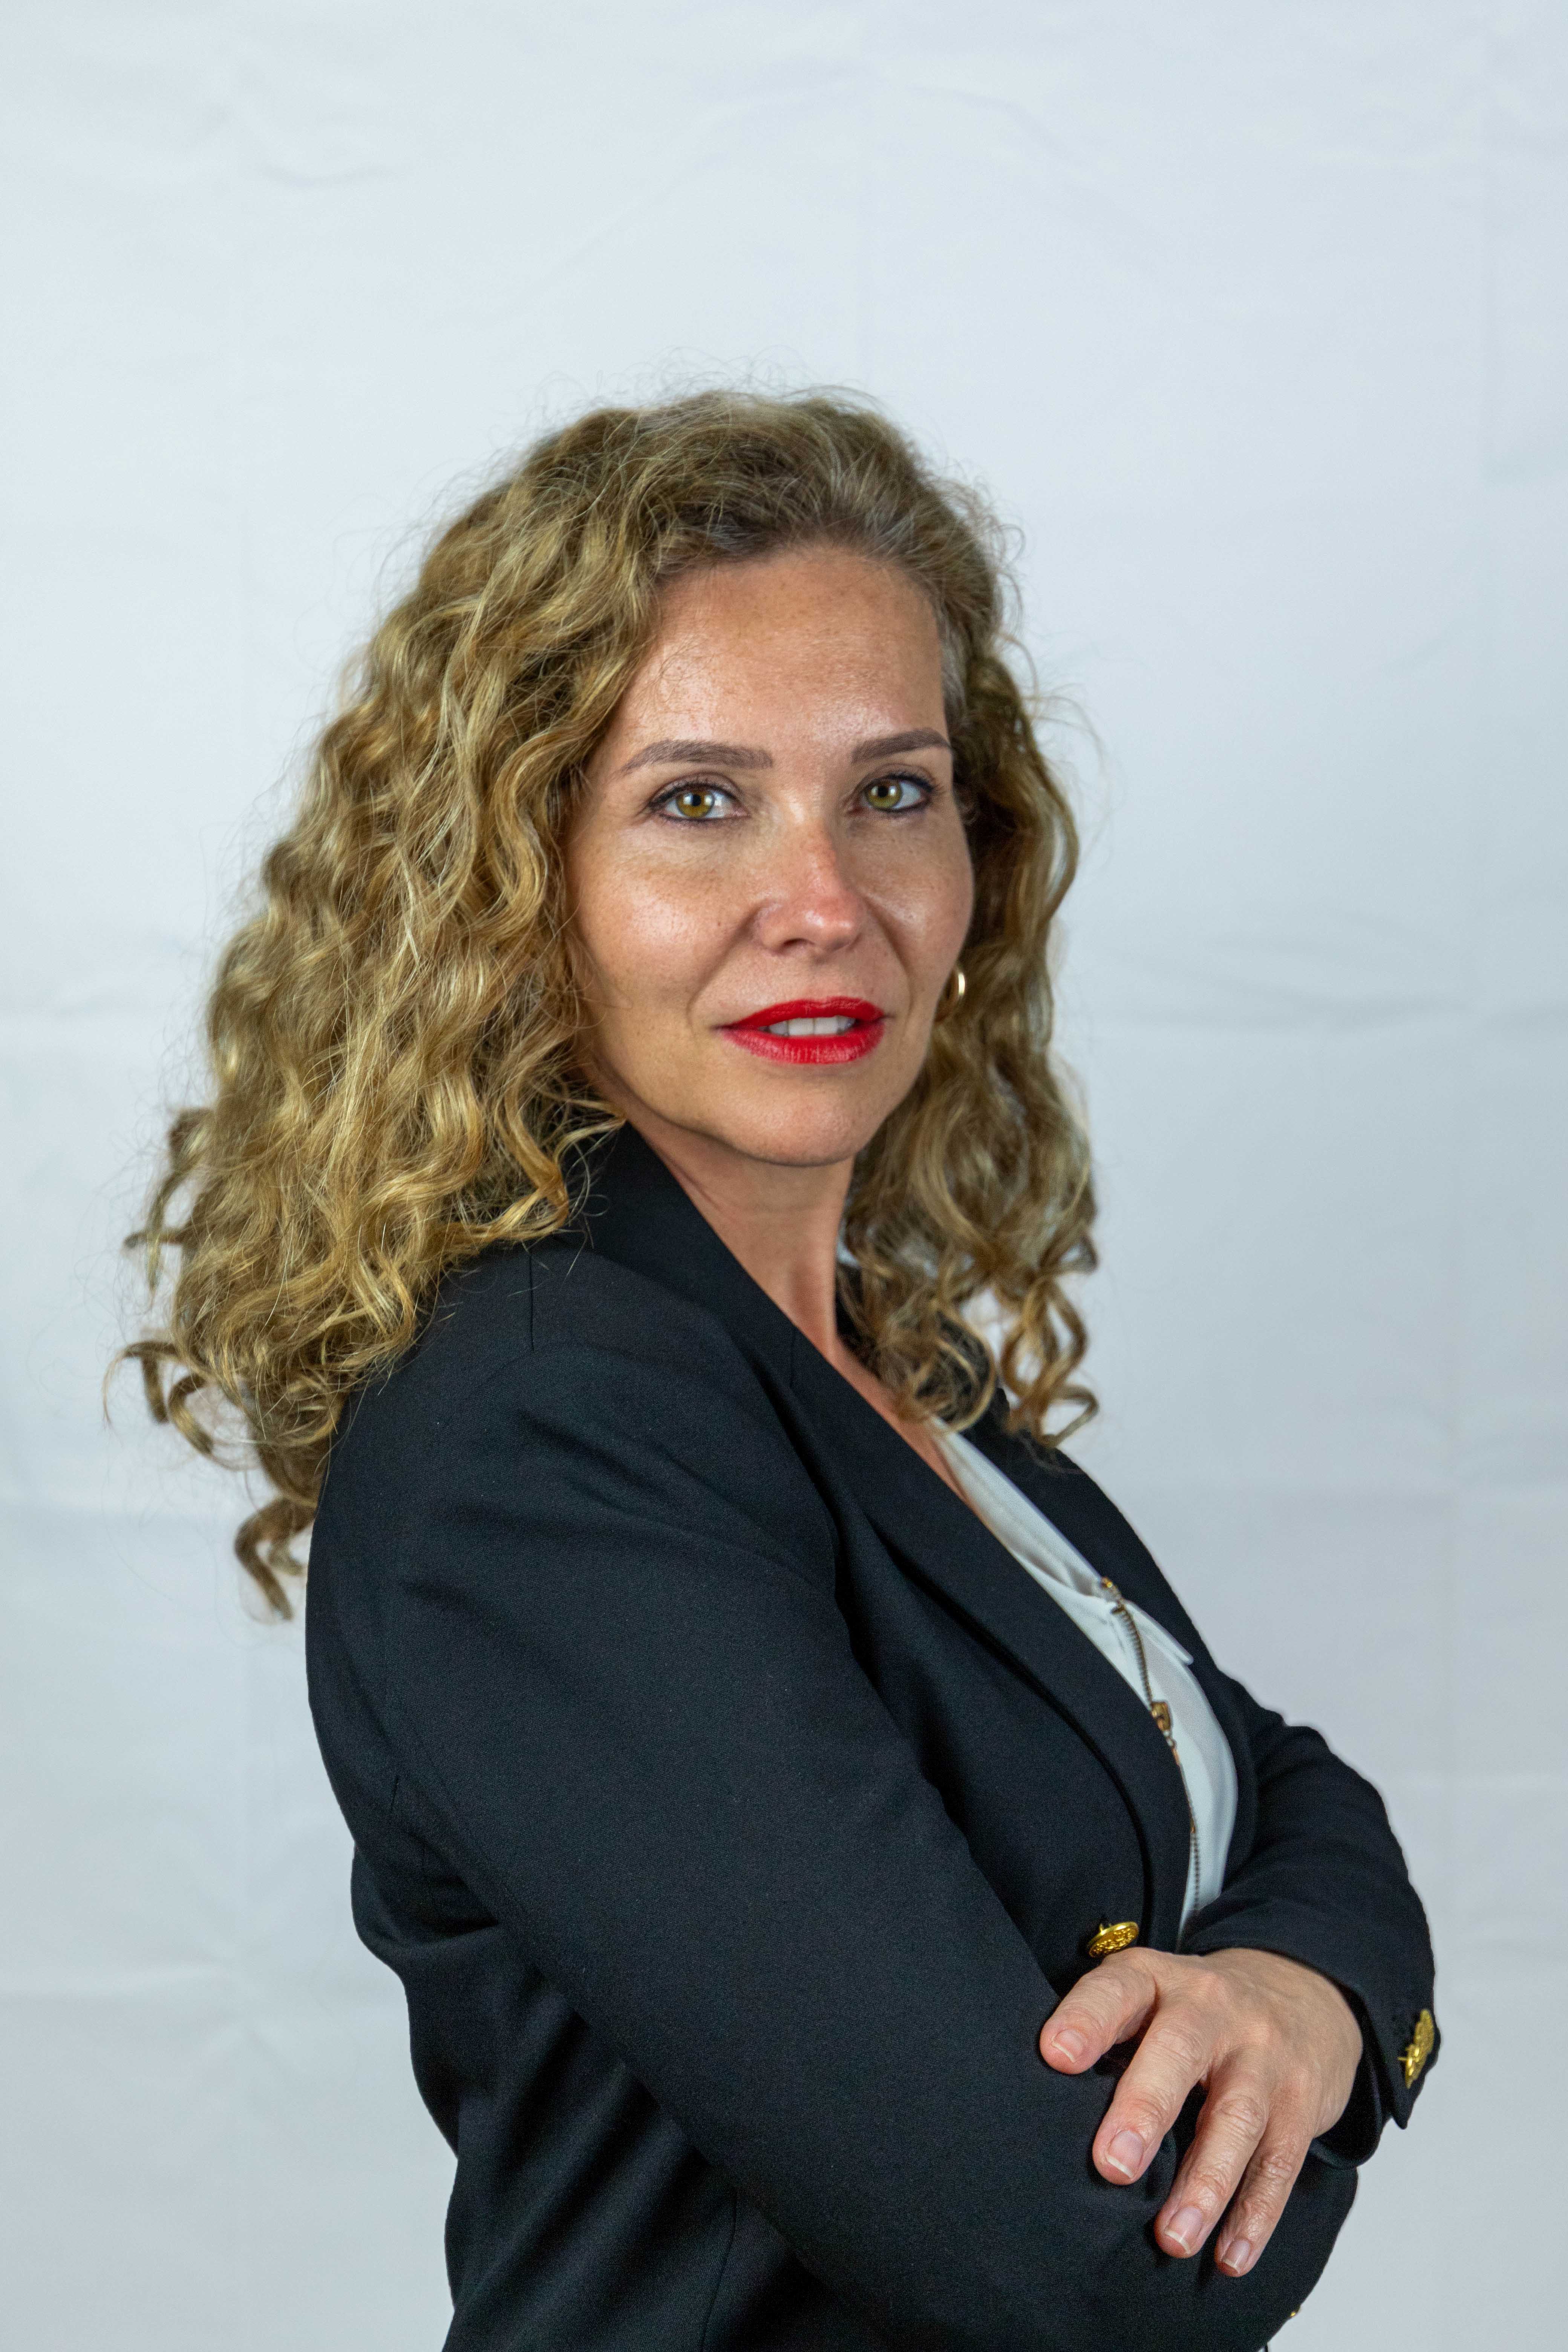 Sonia Ferrandis, sobre el futuro del catálogo ortoprotésico tras la crisis: “Hemos avanzado mucho y no podemos permitir ir hacia atrás”